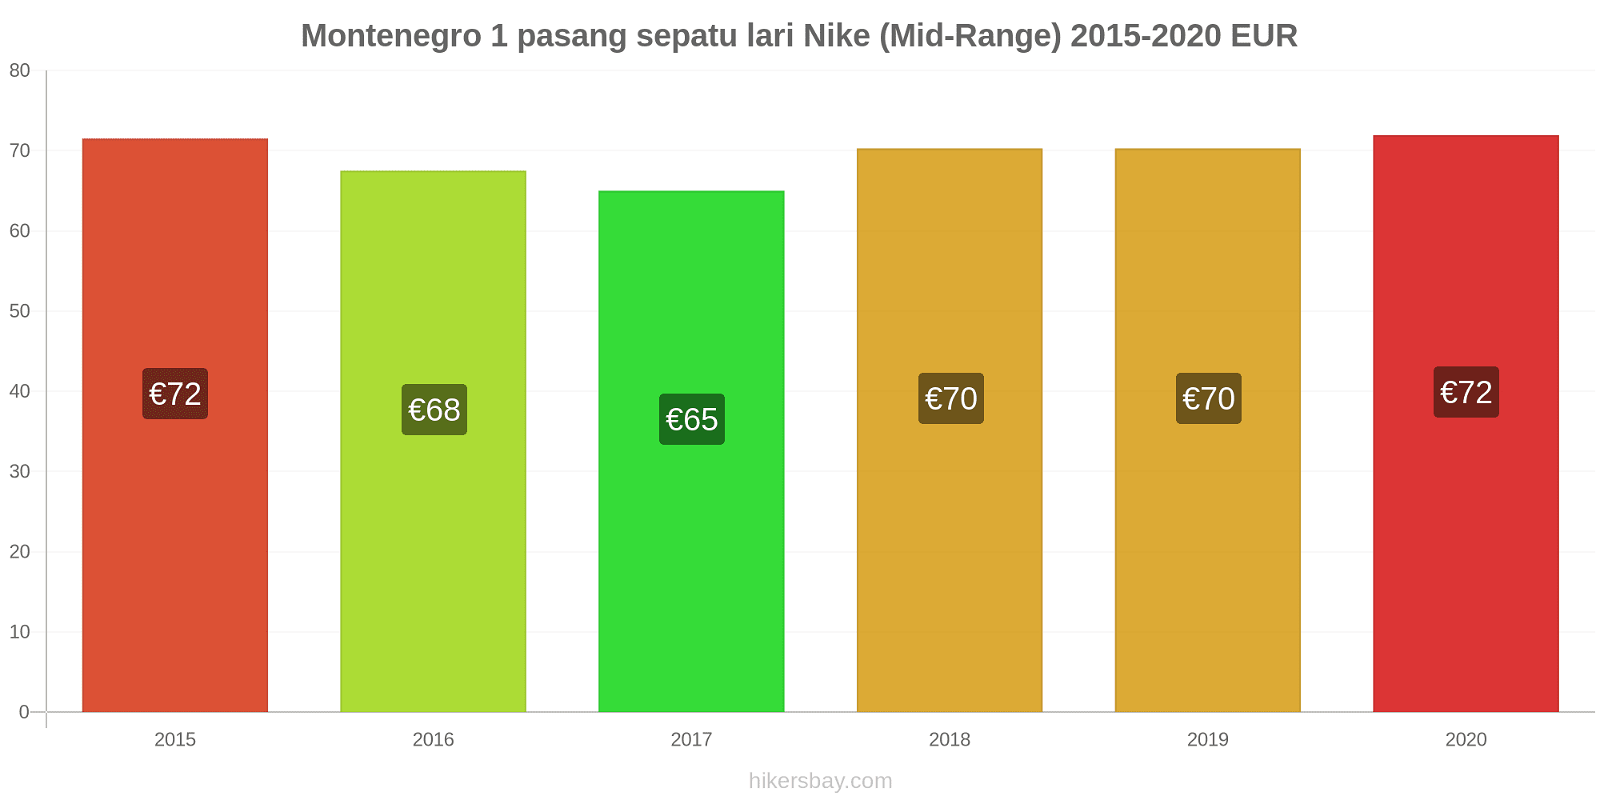 Montenegro perubahan harga 1 pasang sepatu lari Nike (Mid-Range) hikersbay.com